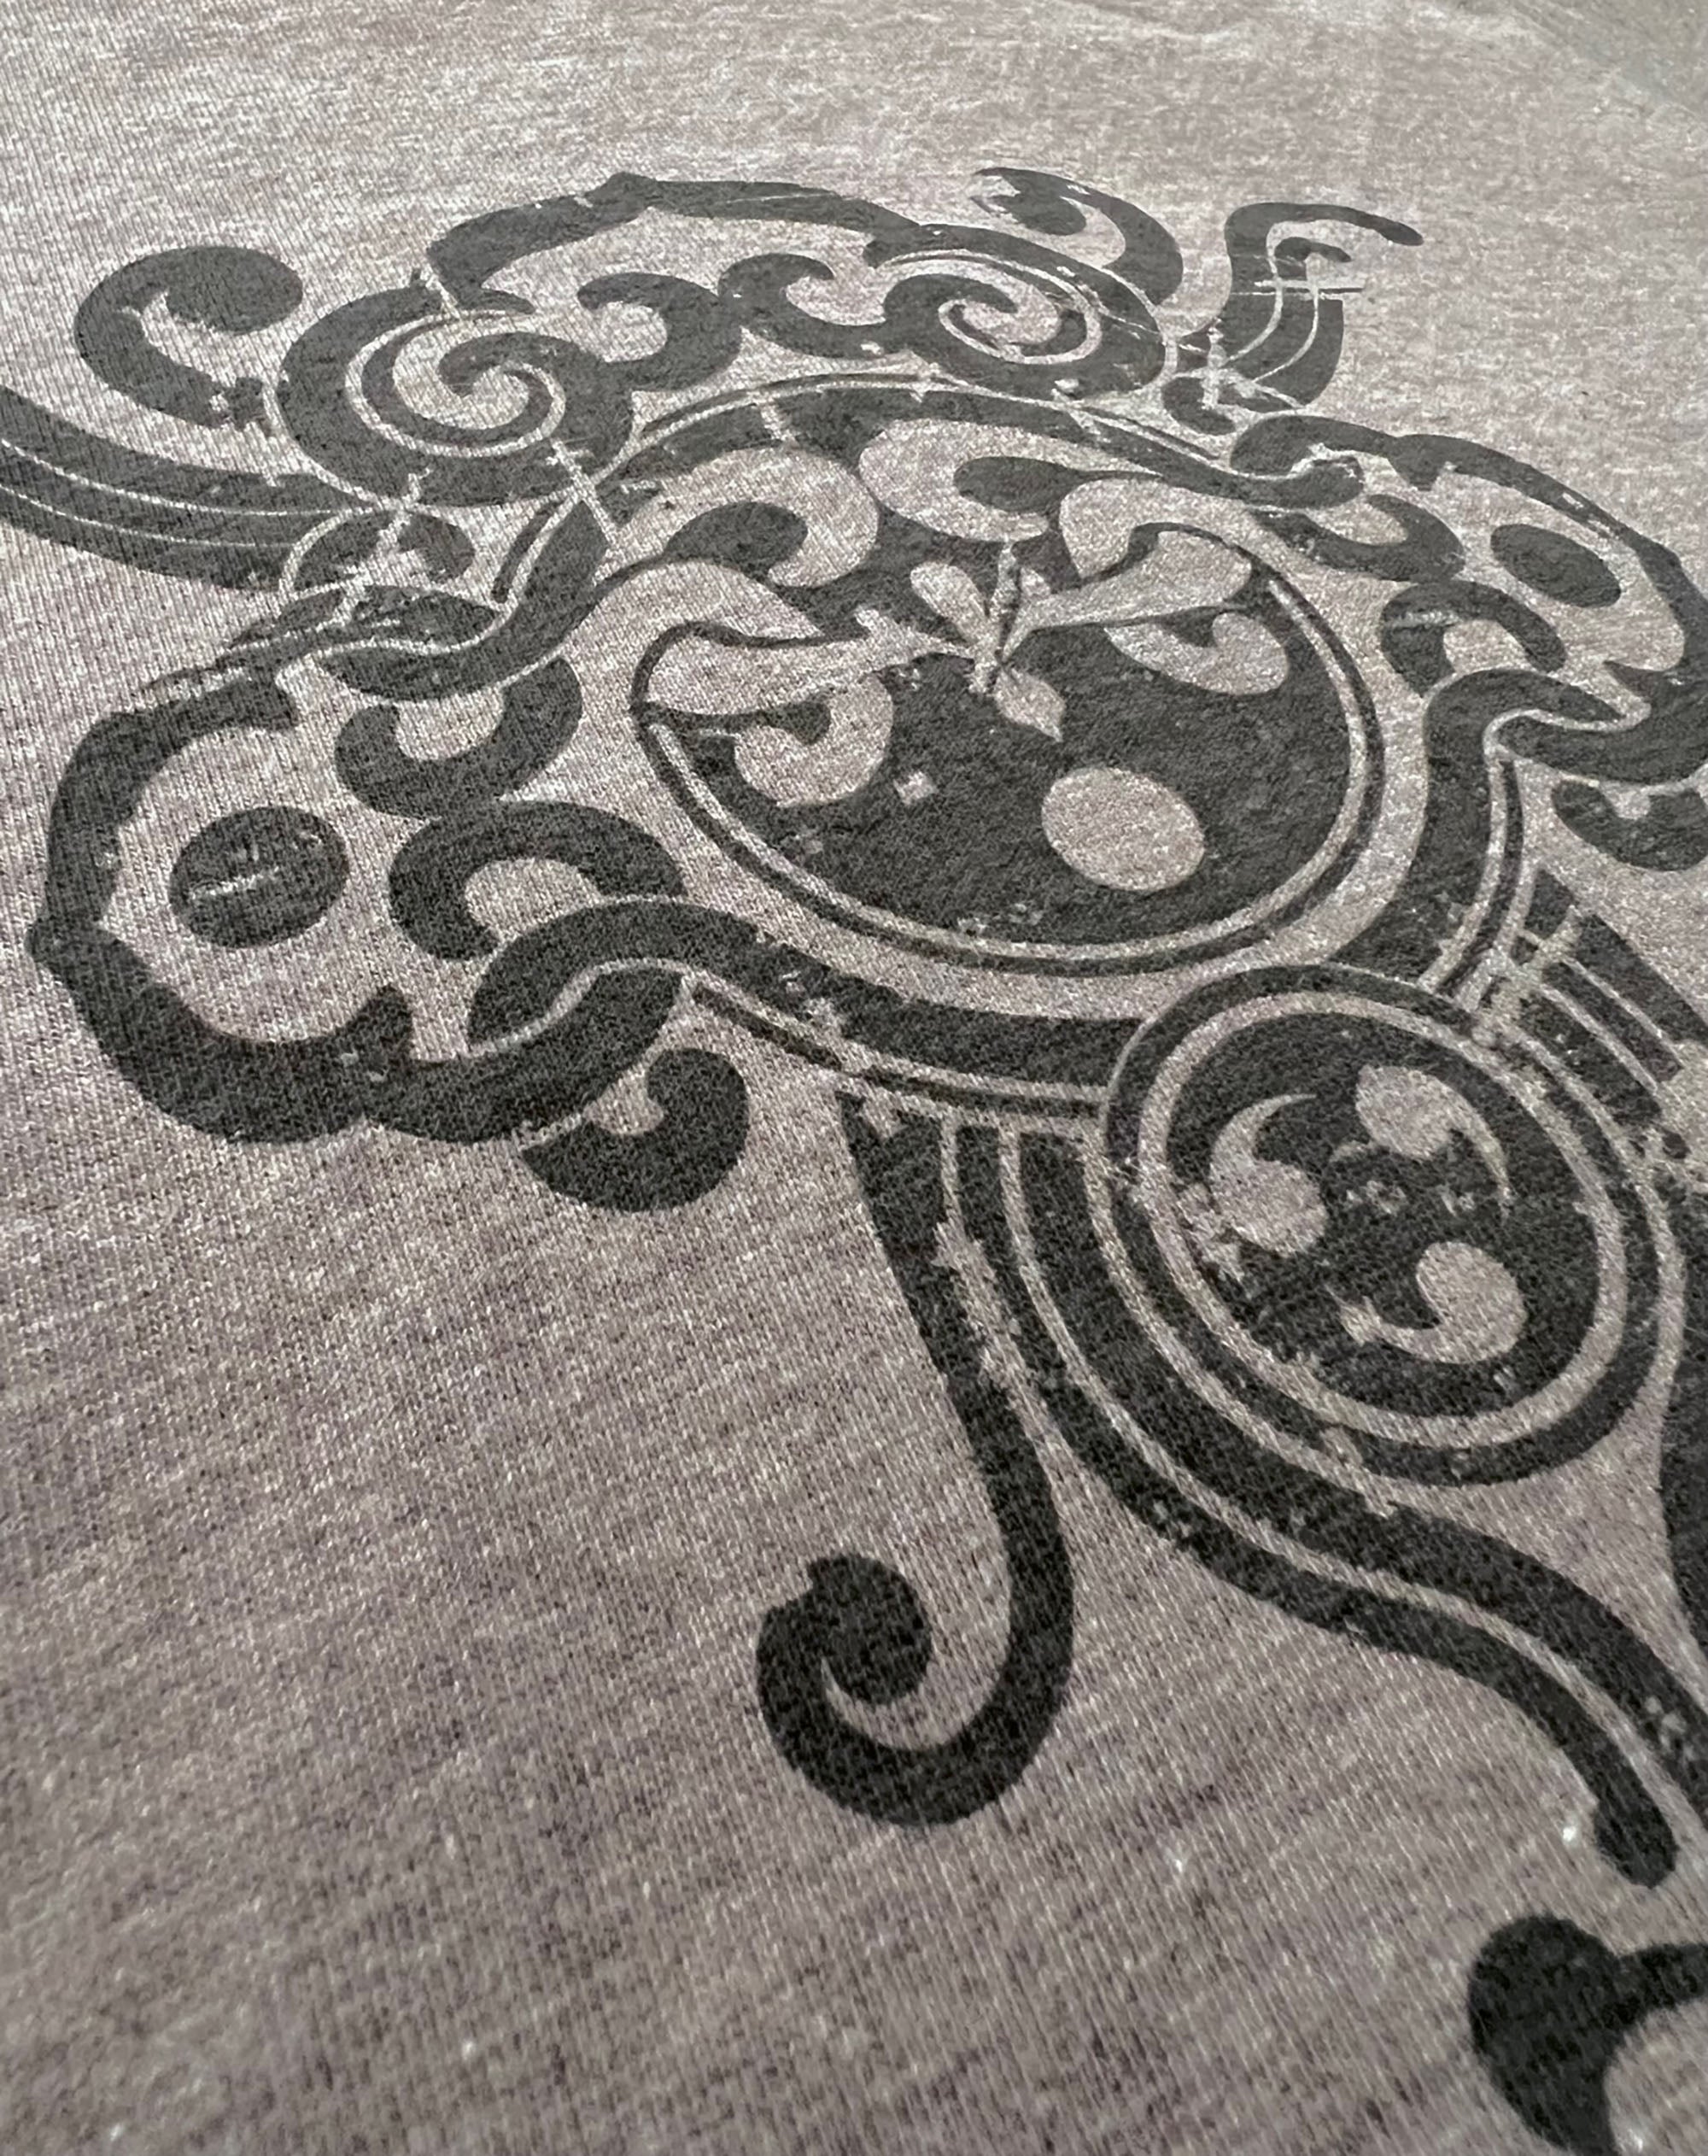 Henna Womens Grey Graphic T-shirt